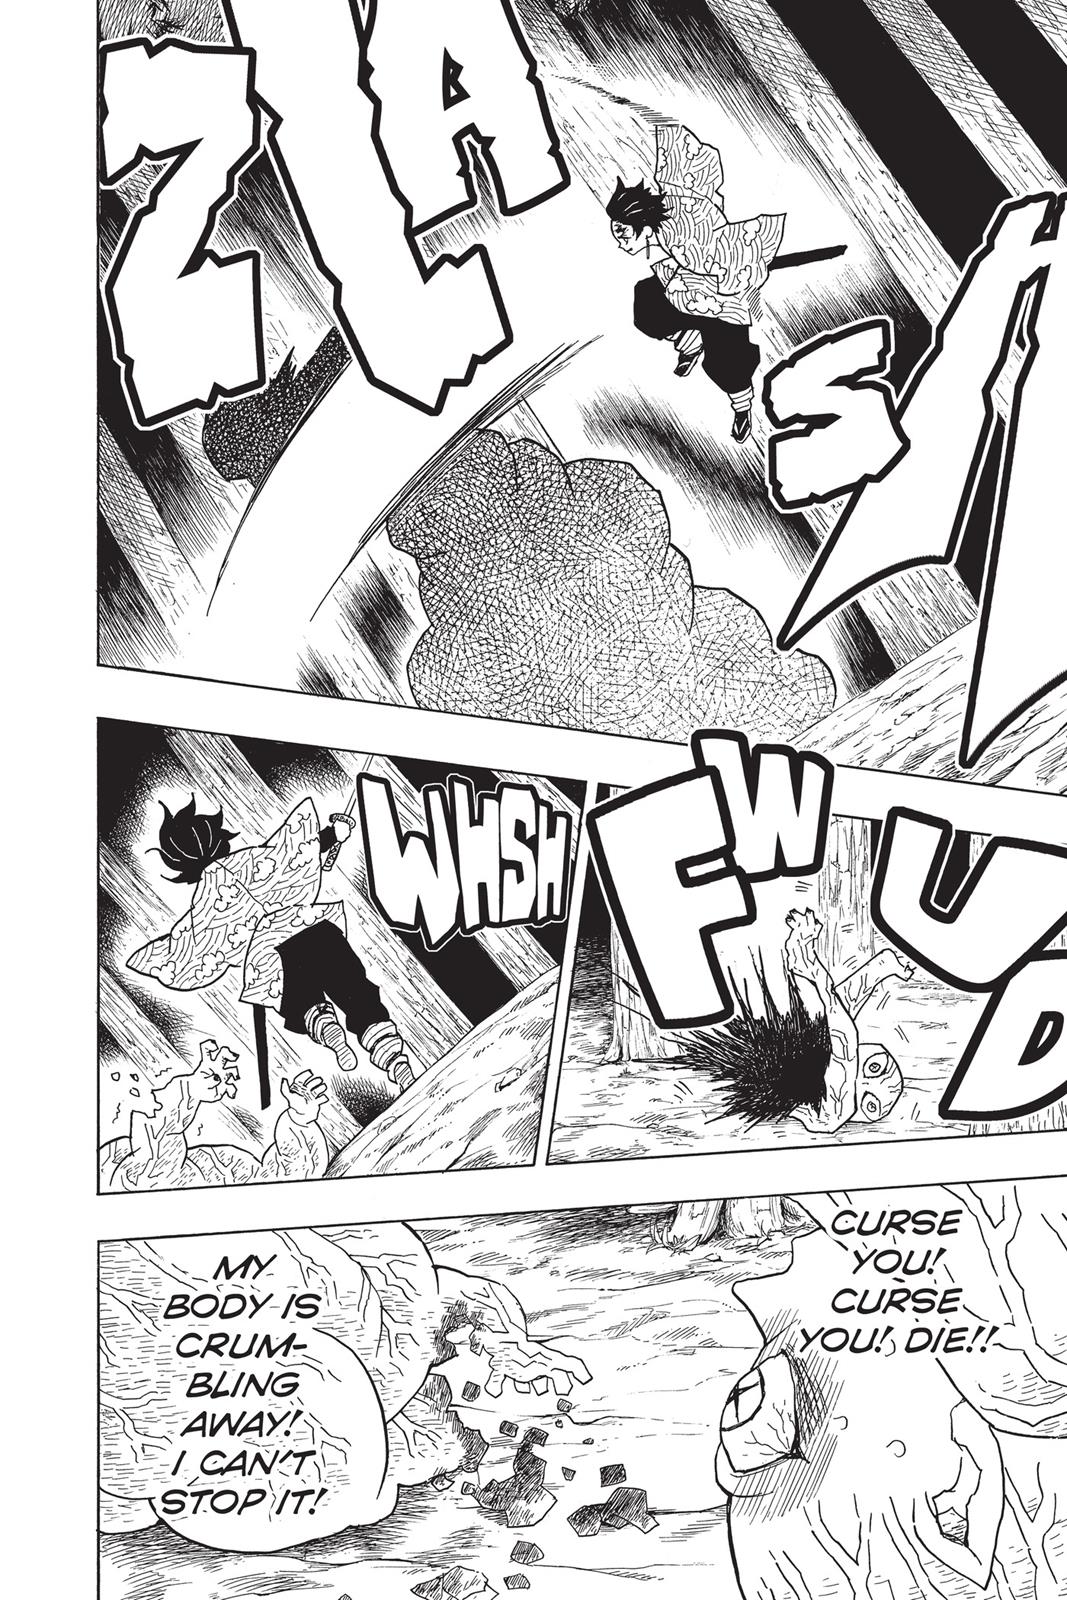 Demon Slayer Manga Manga Chapter - 8 - image 7